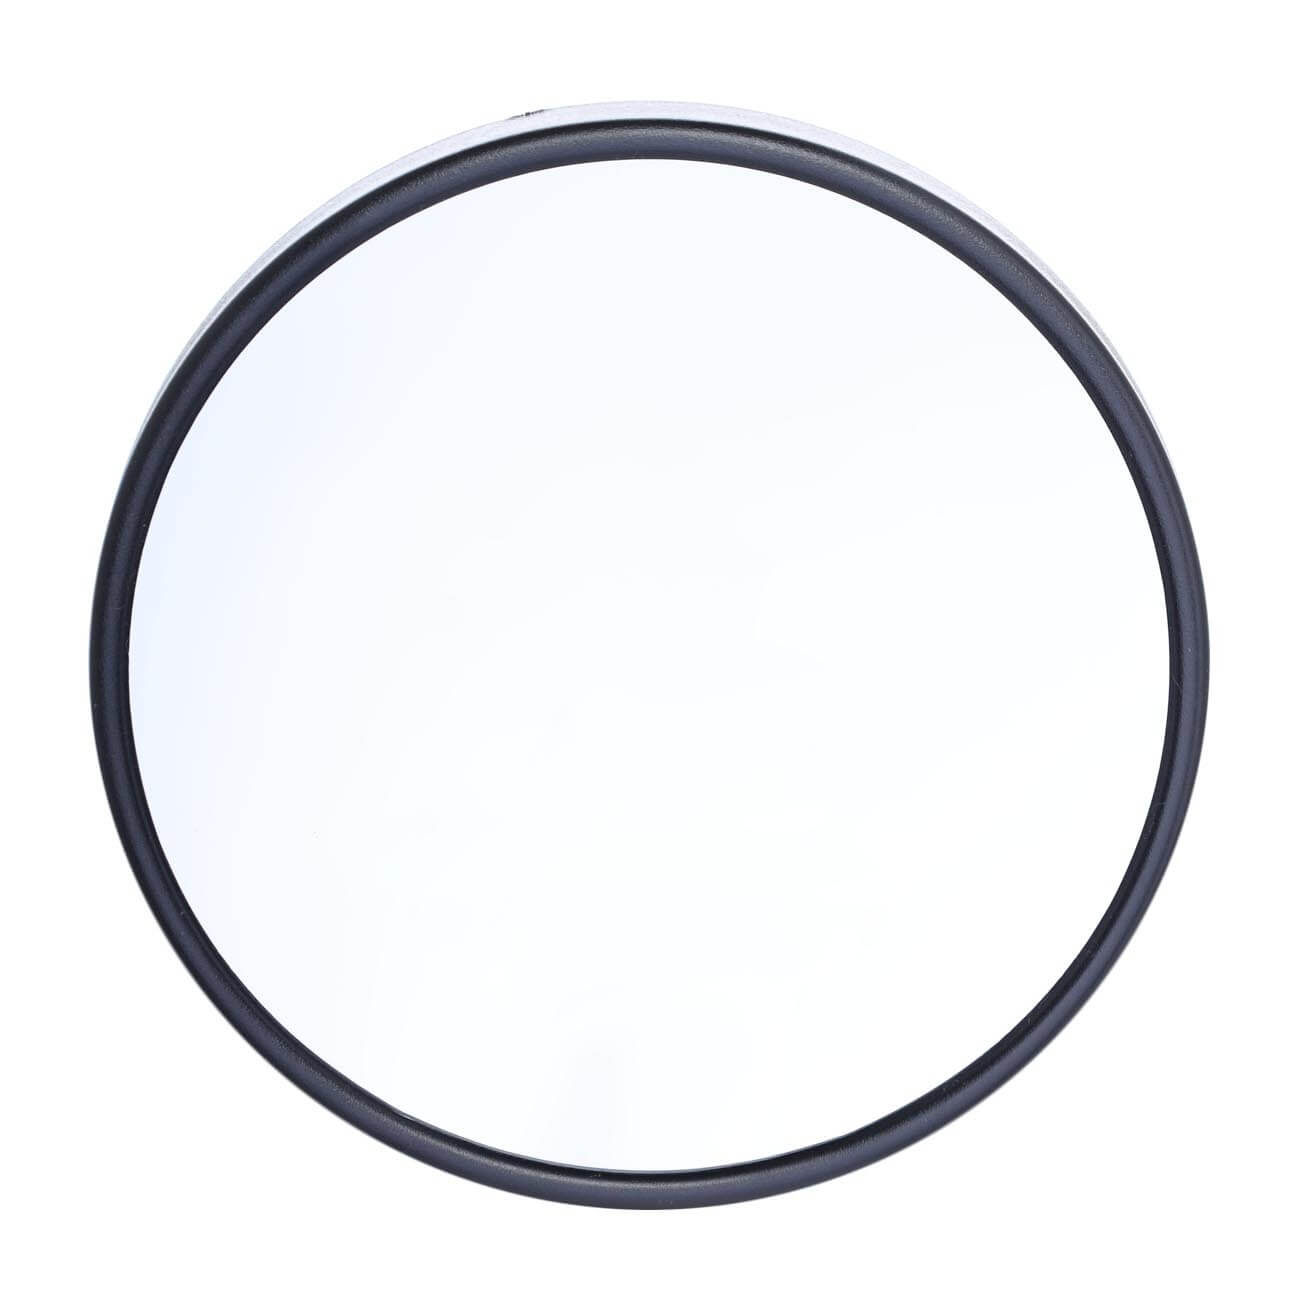 Зеркало подвесное, 13 см, увеличительное, на присосках, пластик, круглое, черное, Mirror контейнер пищевой пластик 0 5 л прямоугольный бытпласт phibo eco style 433121236